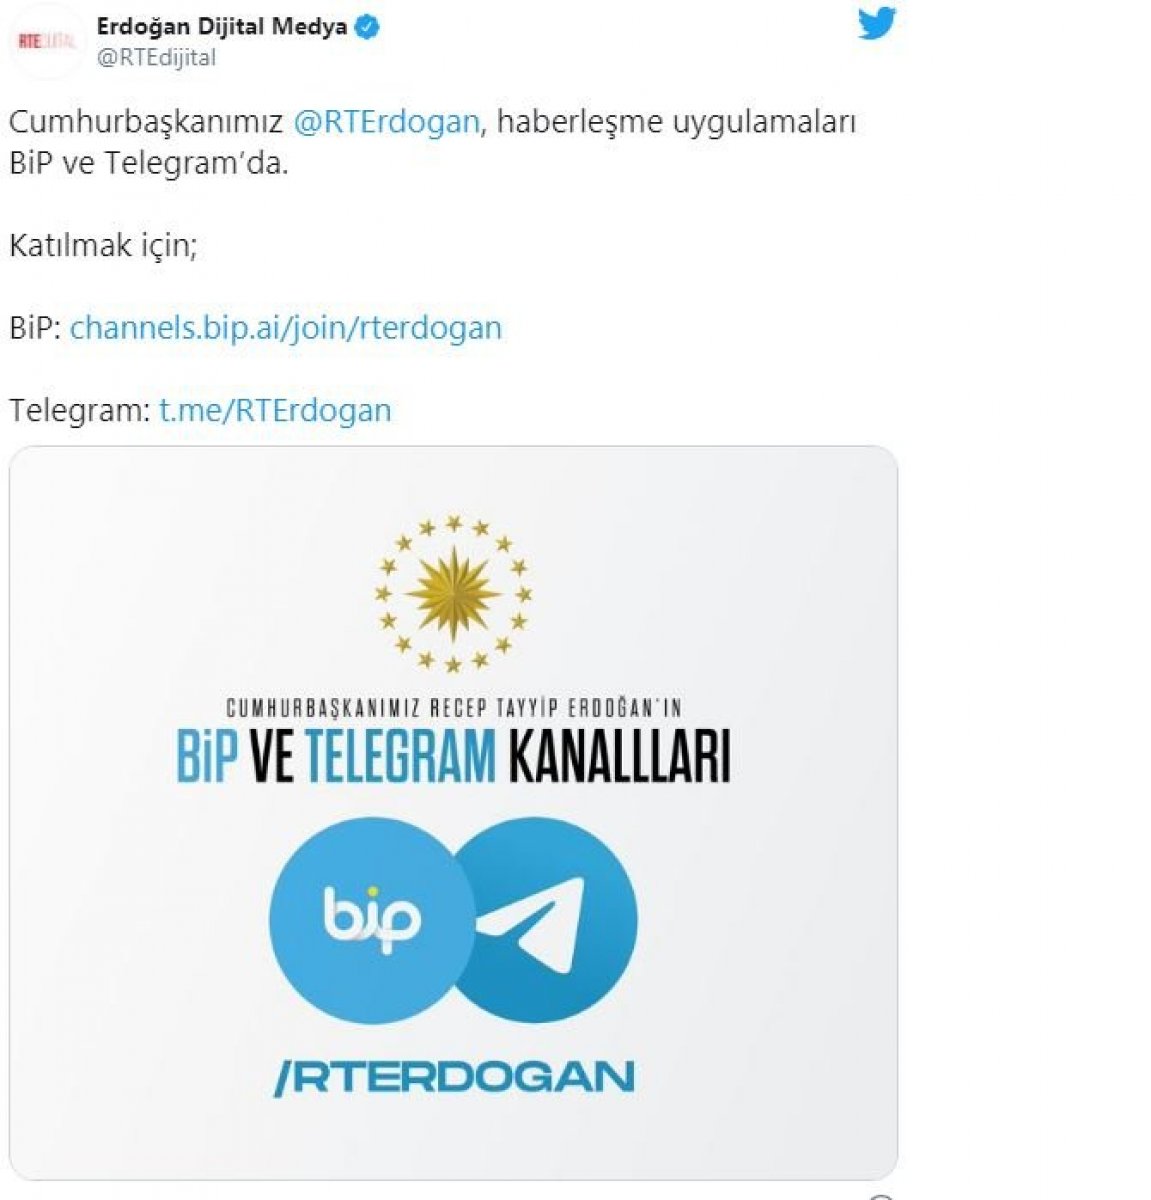 Pavel Durov, founder of Telegram: We are honored that Recep Tayyip Erdoğan joined Telegram #1